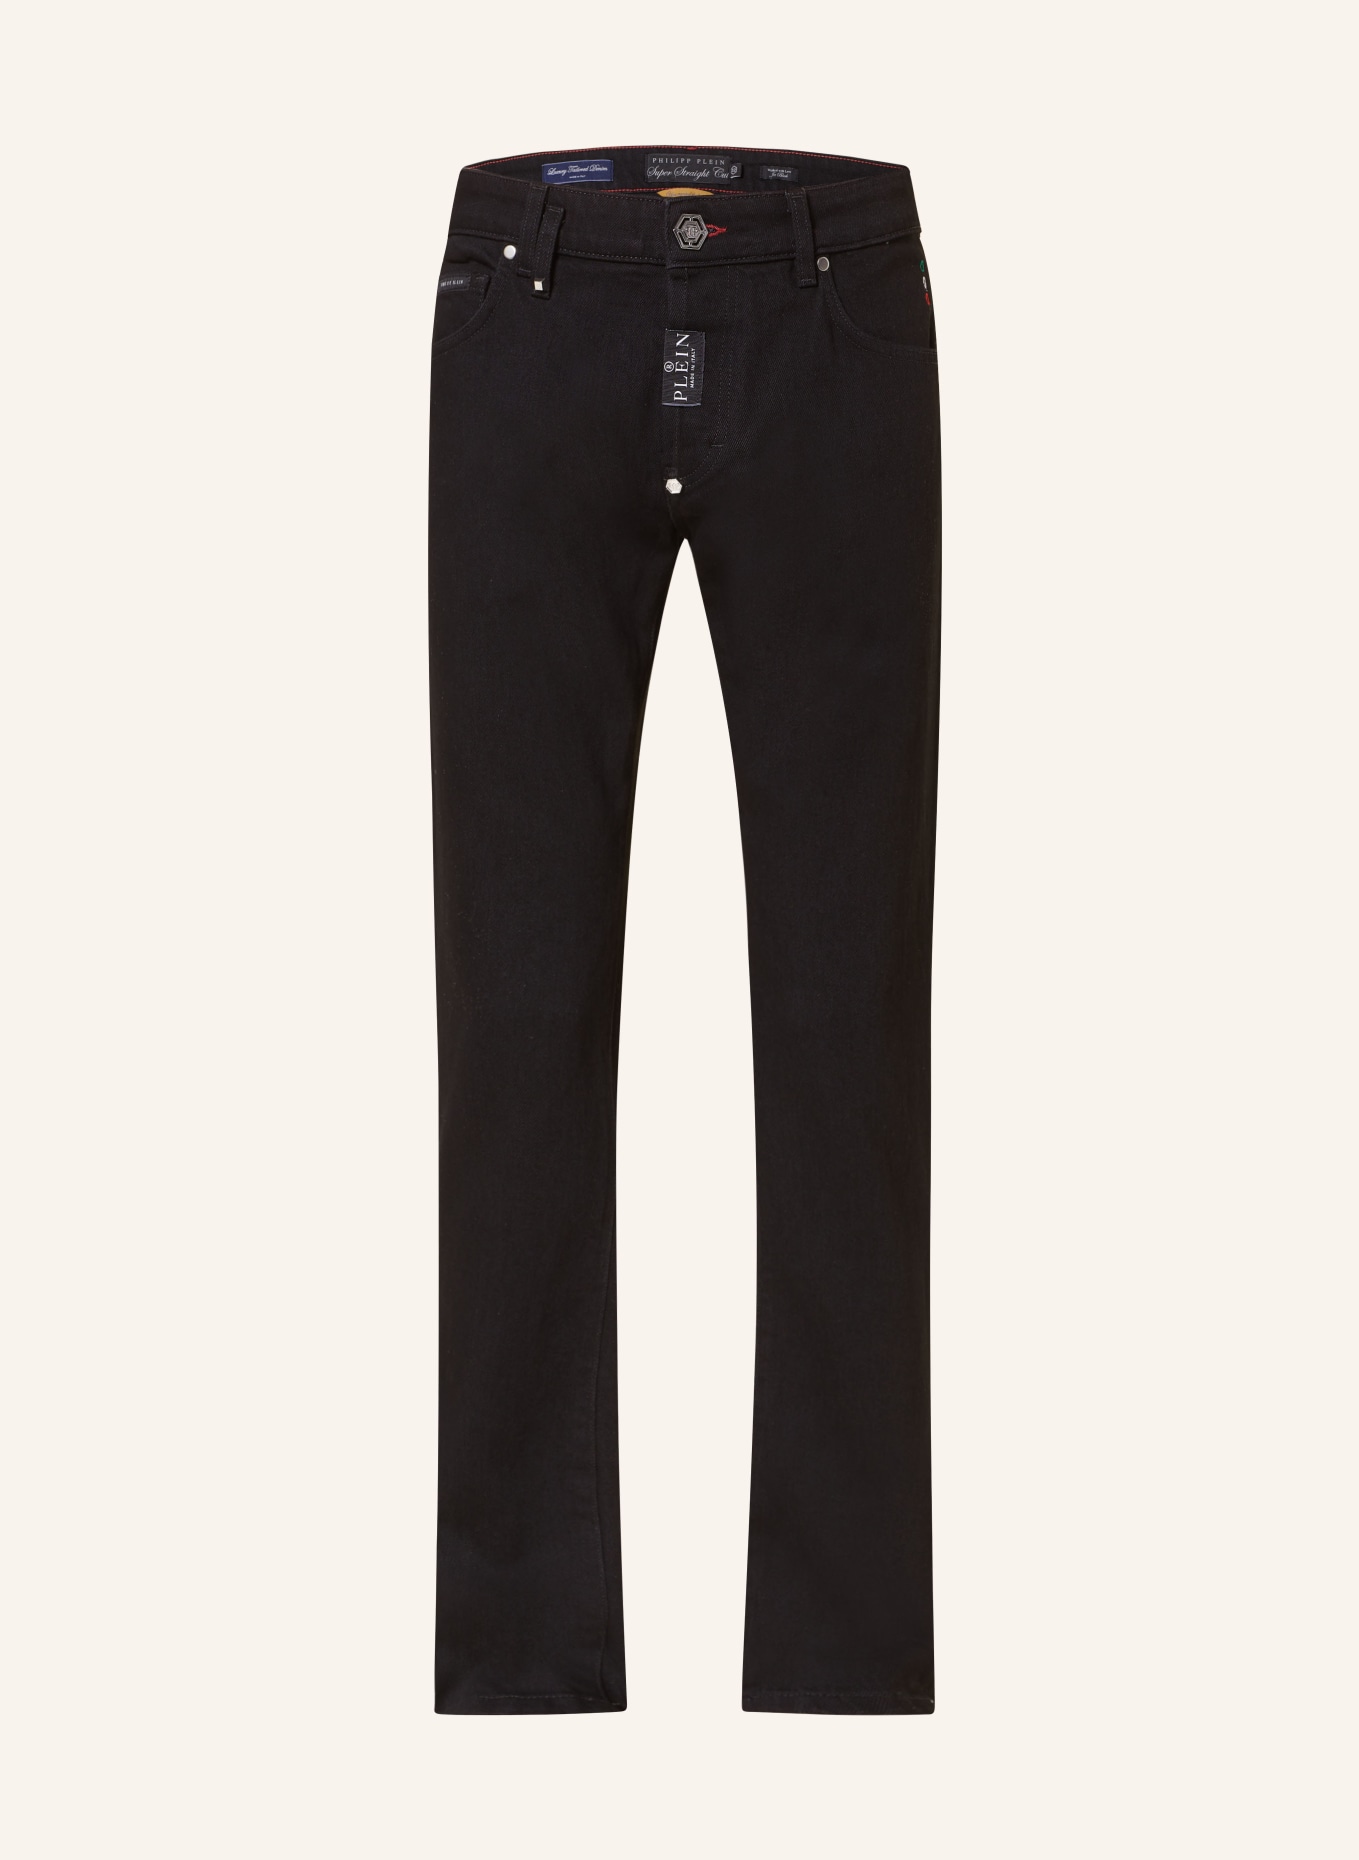 PHILIPP PLEIN Jeans Super Straight Fit, Farbe: 02JB JET BLACK (Bild 1)